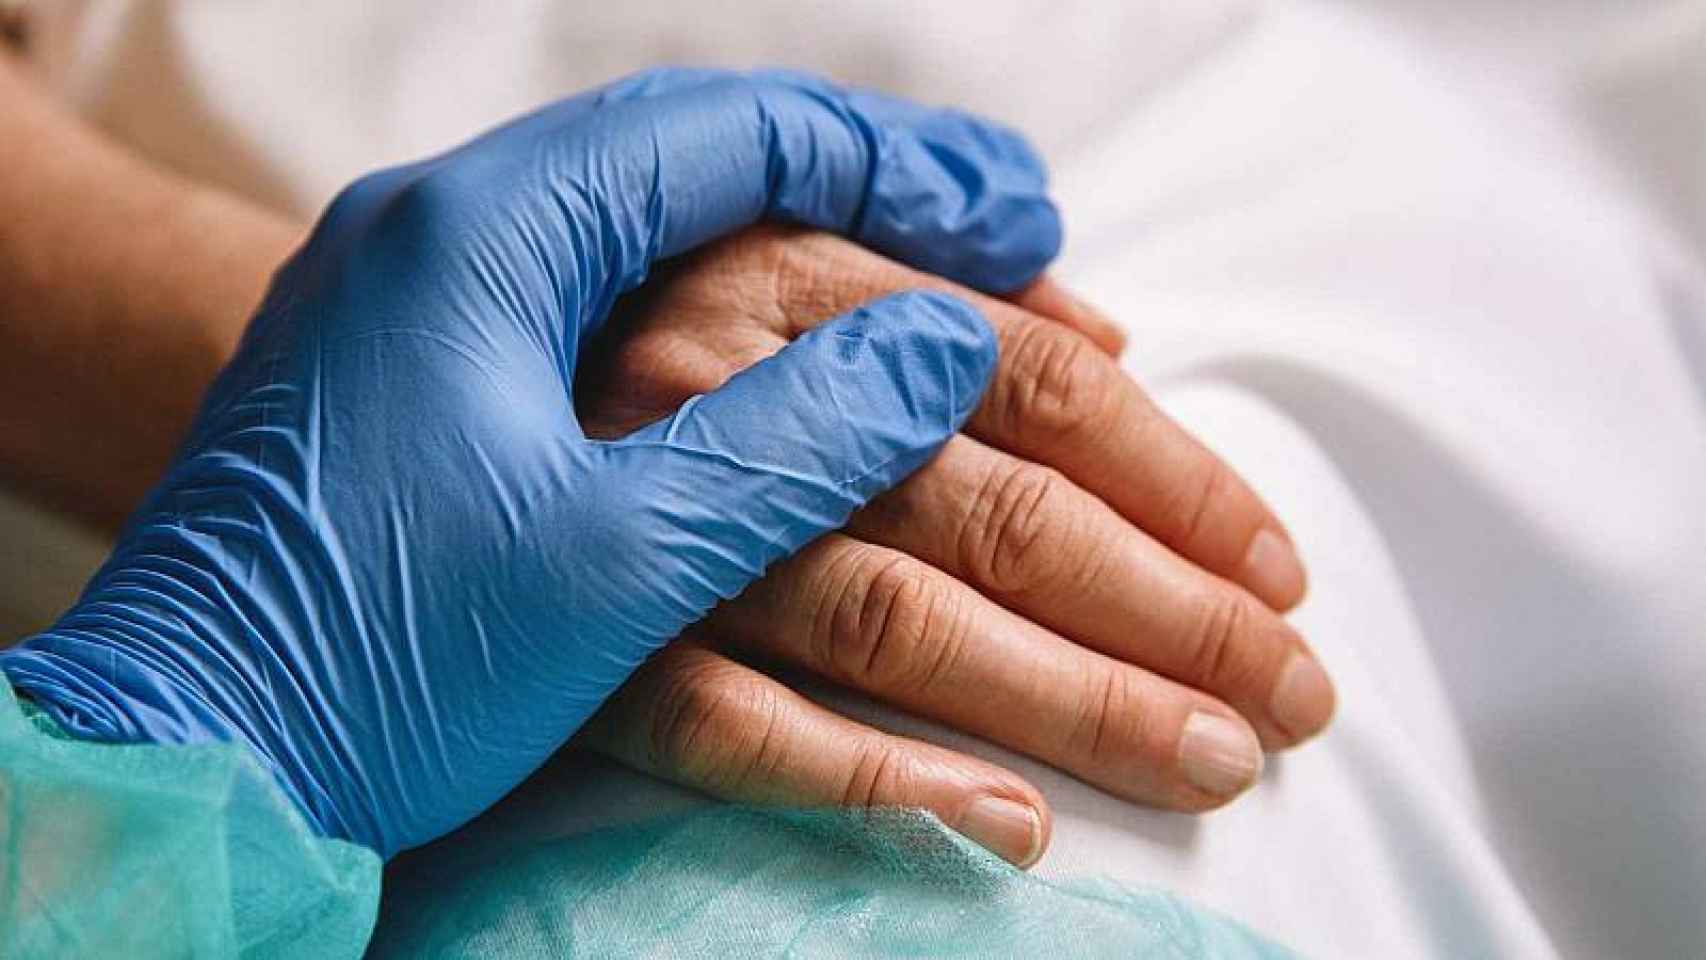 Un sanitario sosteniendo la mano de una persona durante la pandemia.